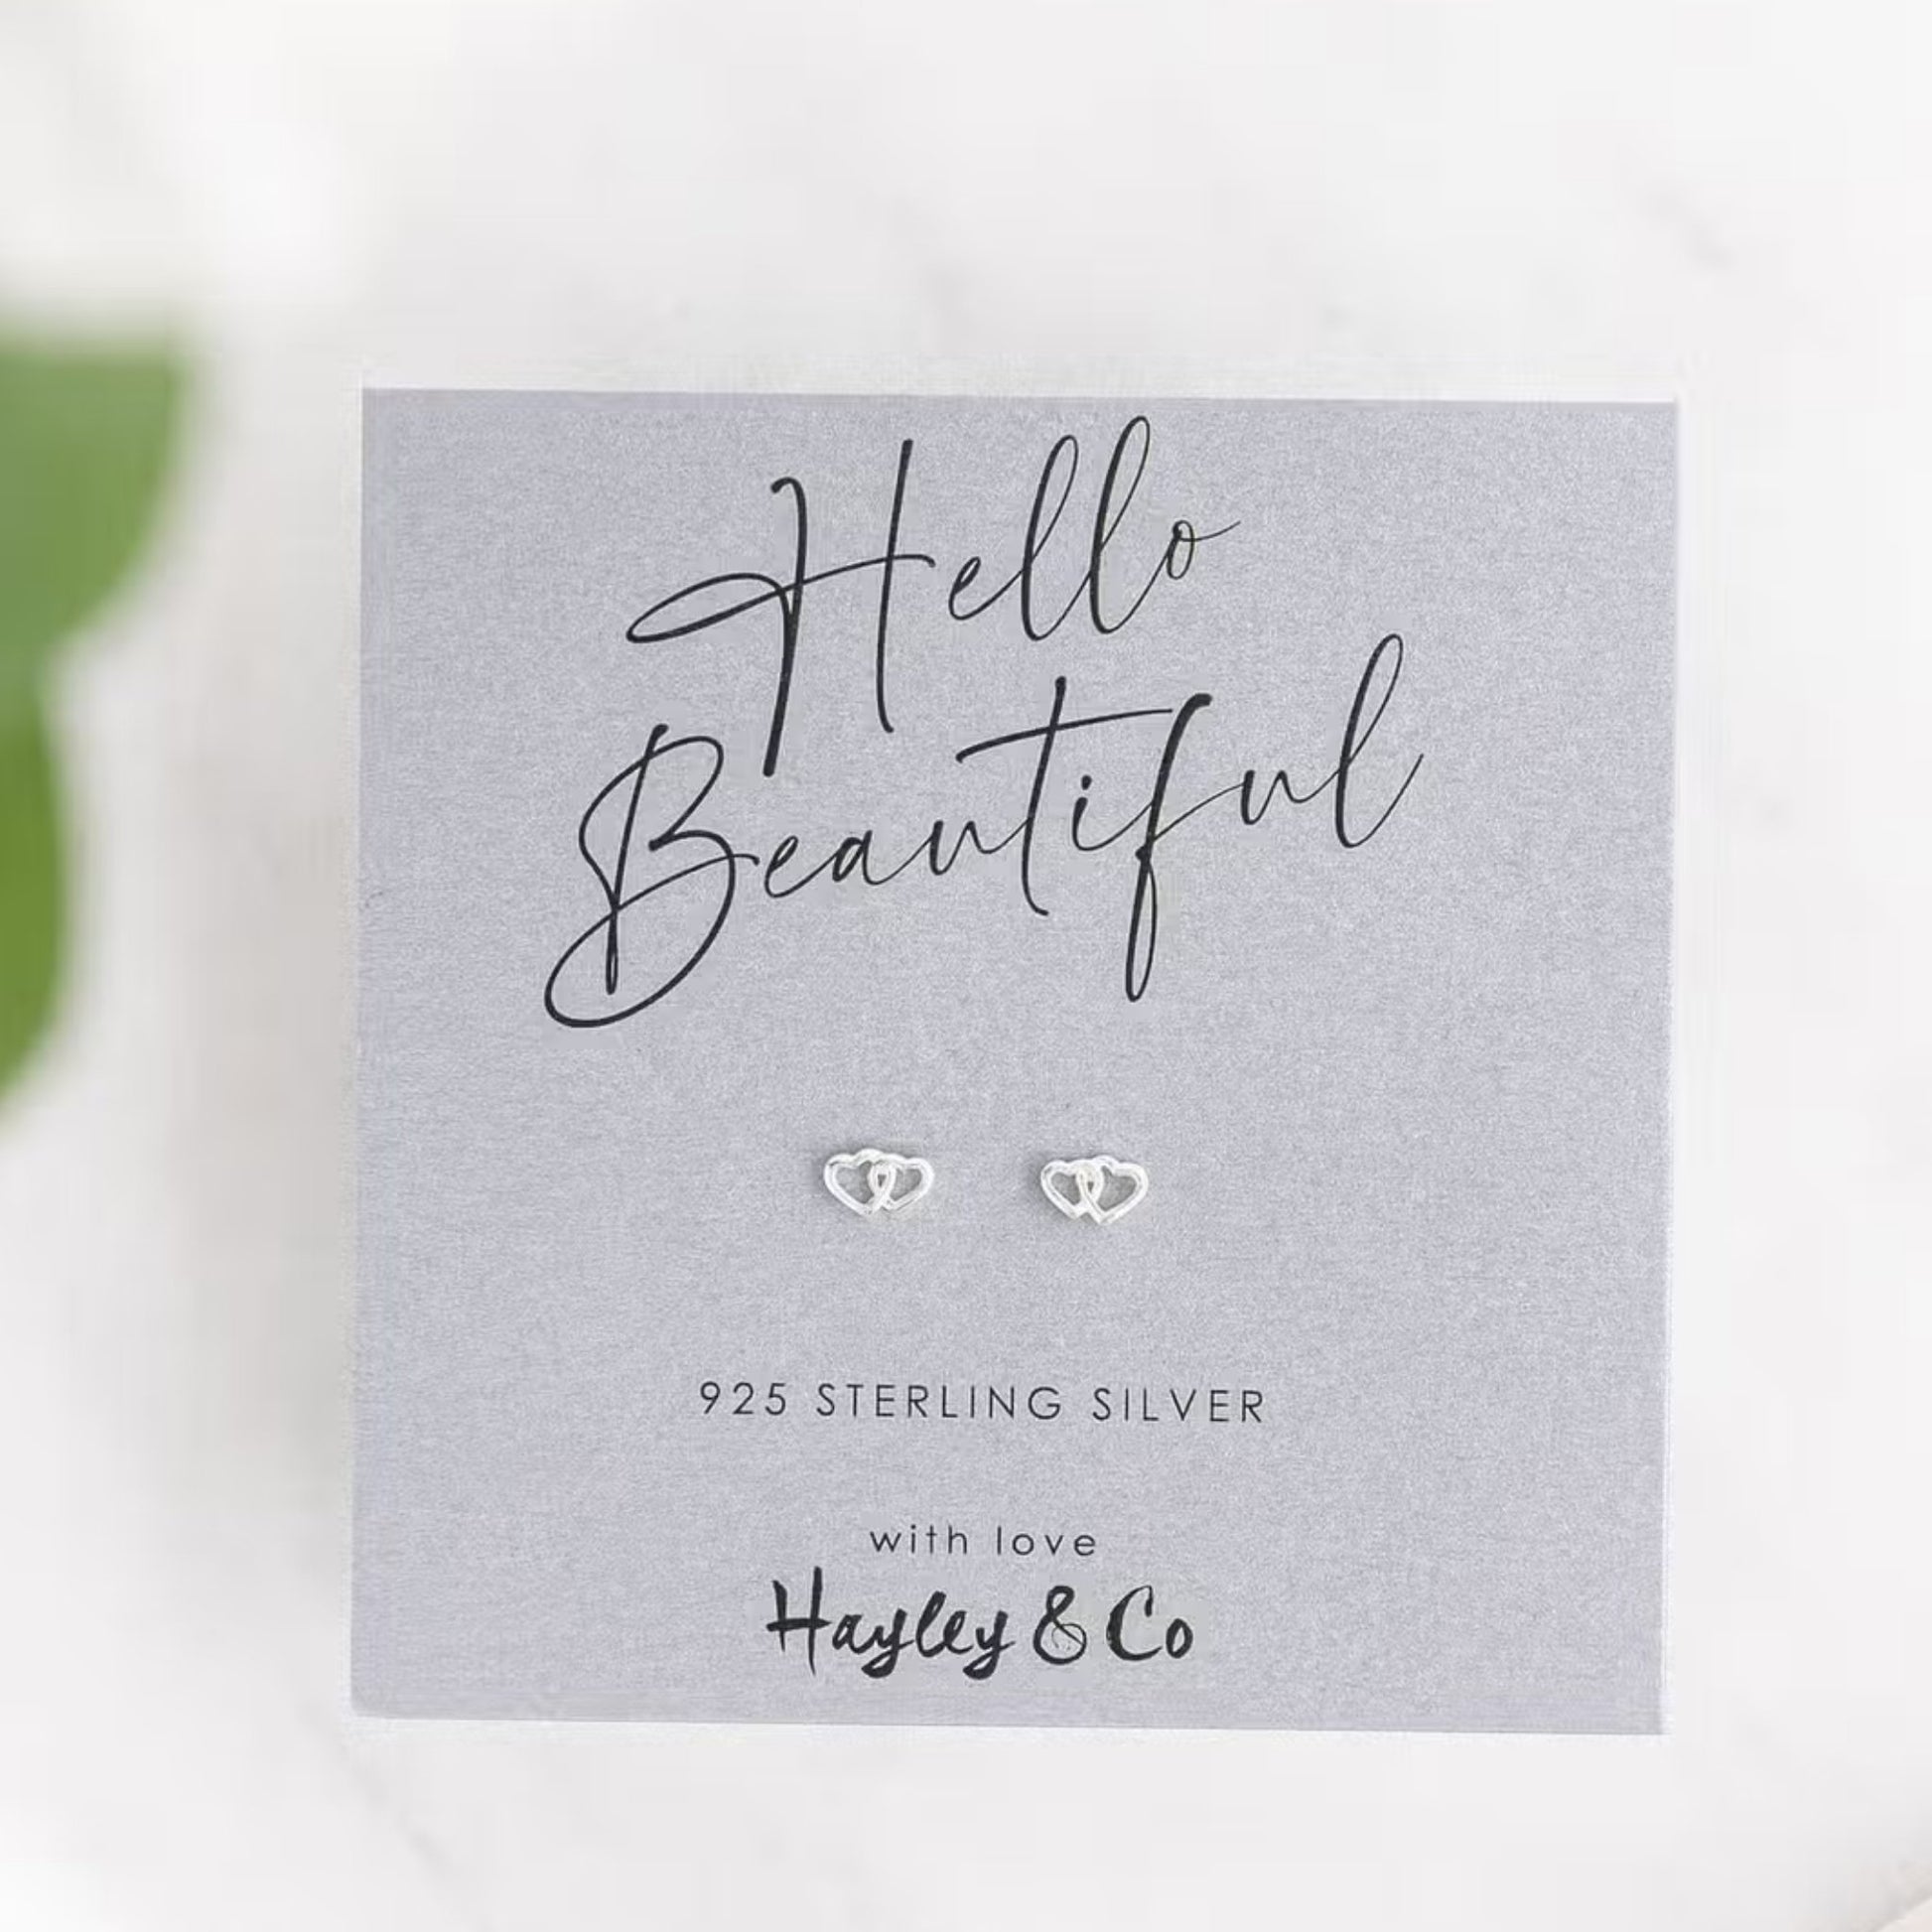 Hello Love Heart Sterling Silver Earrings - The Little Jewellery Company